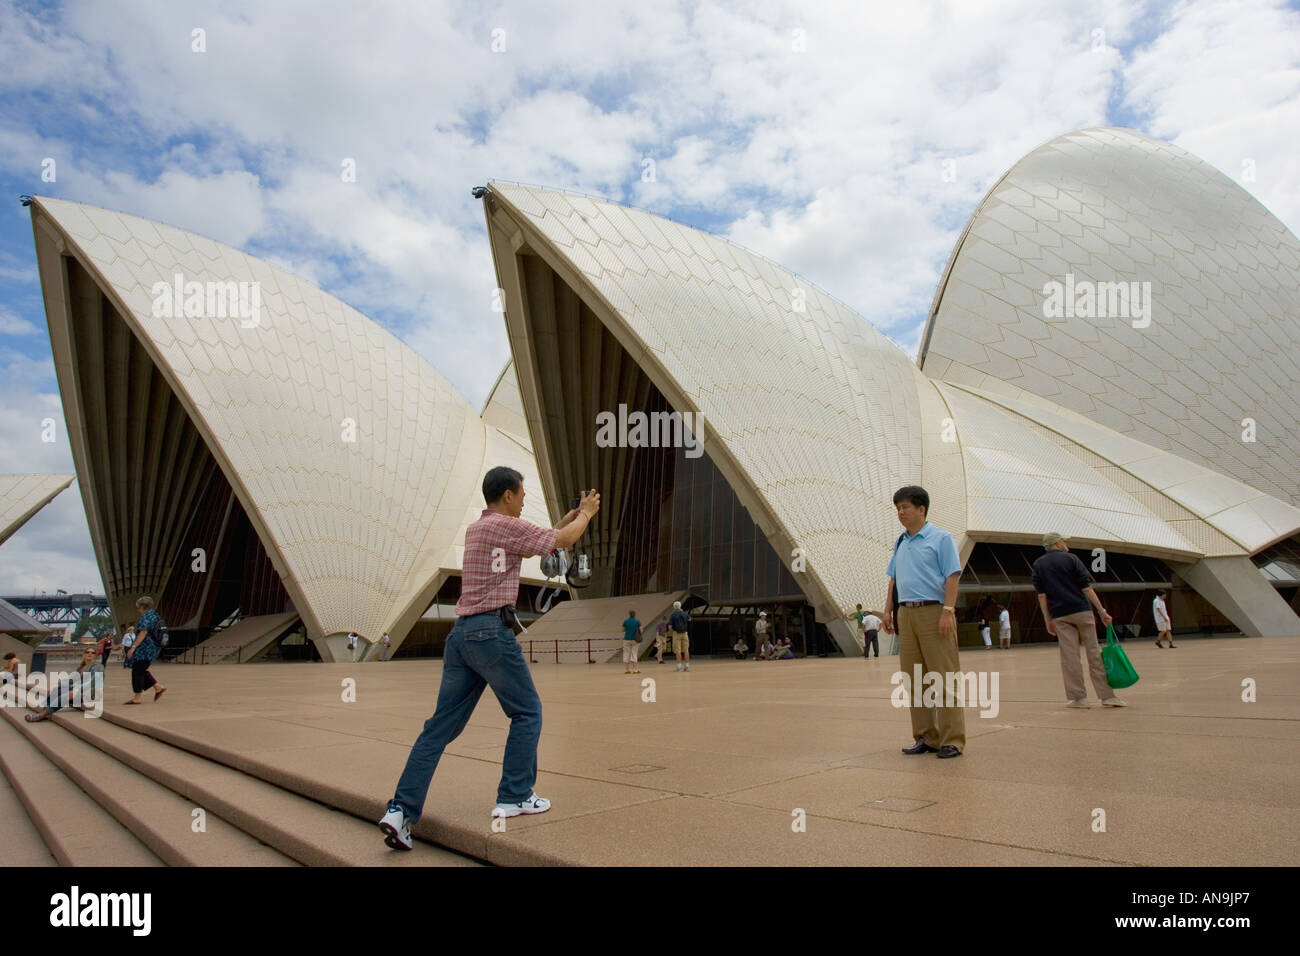 Les touristes de prendre des photos à l'extérieur de l'Opéra de Sydney en Australie Banque D'Images